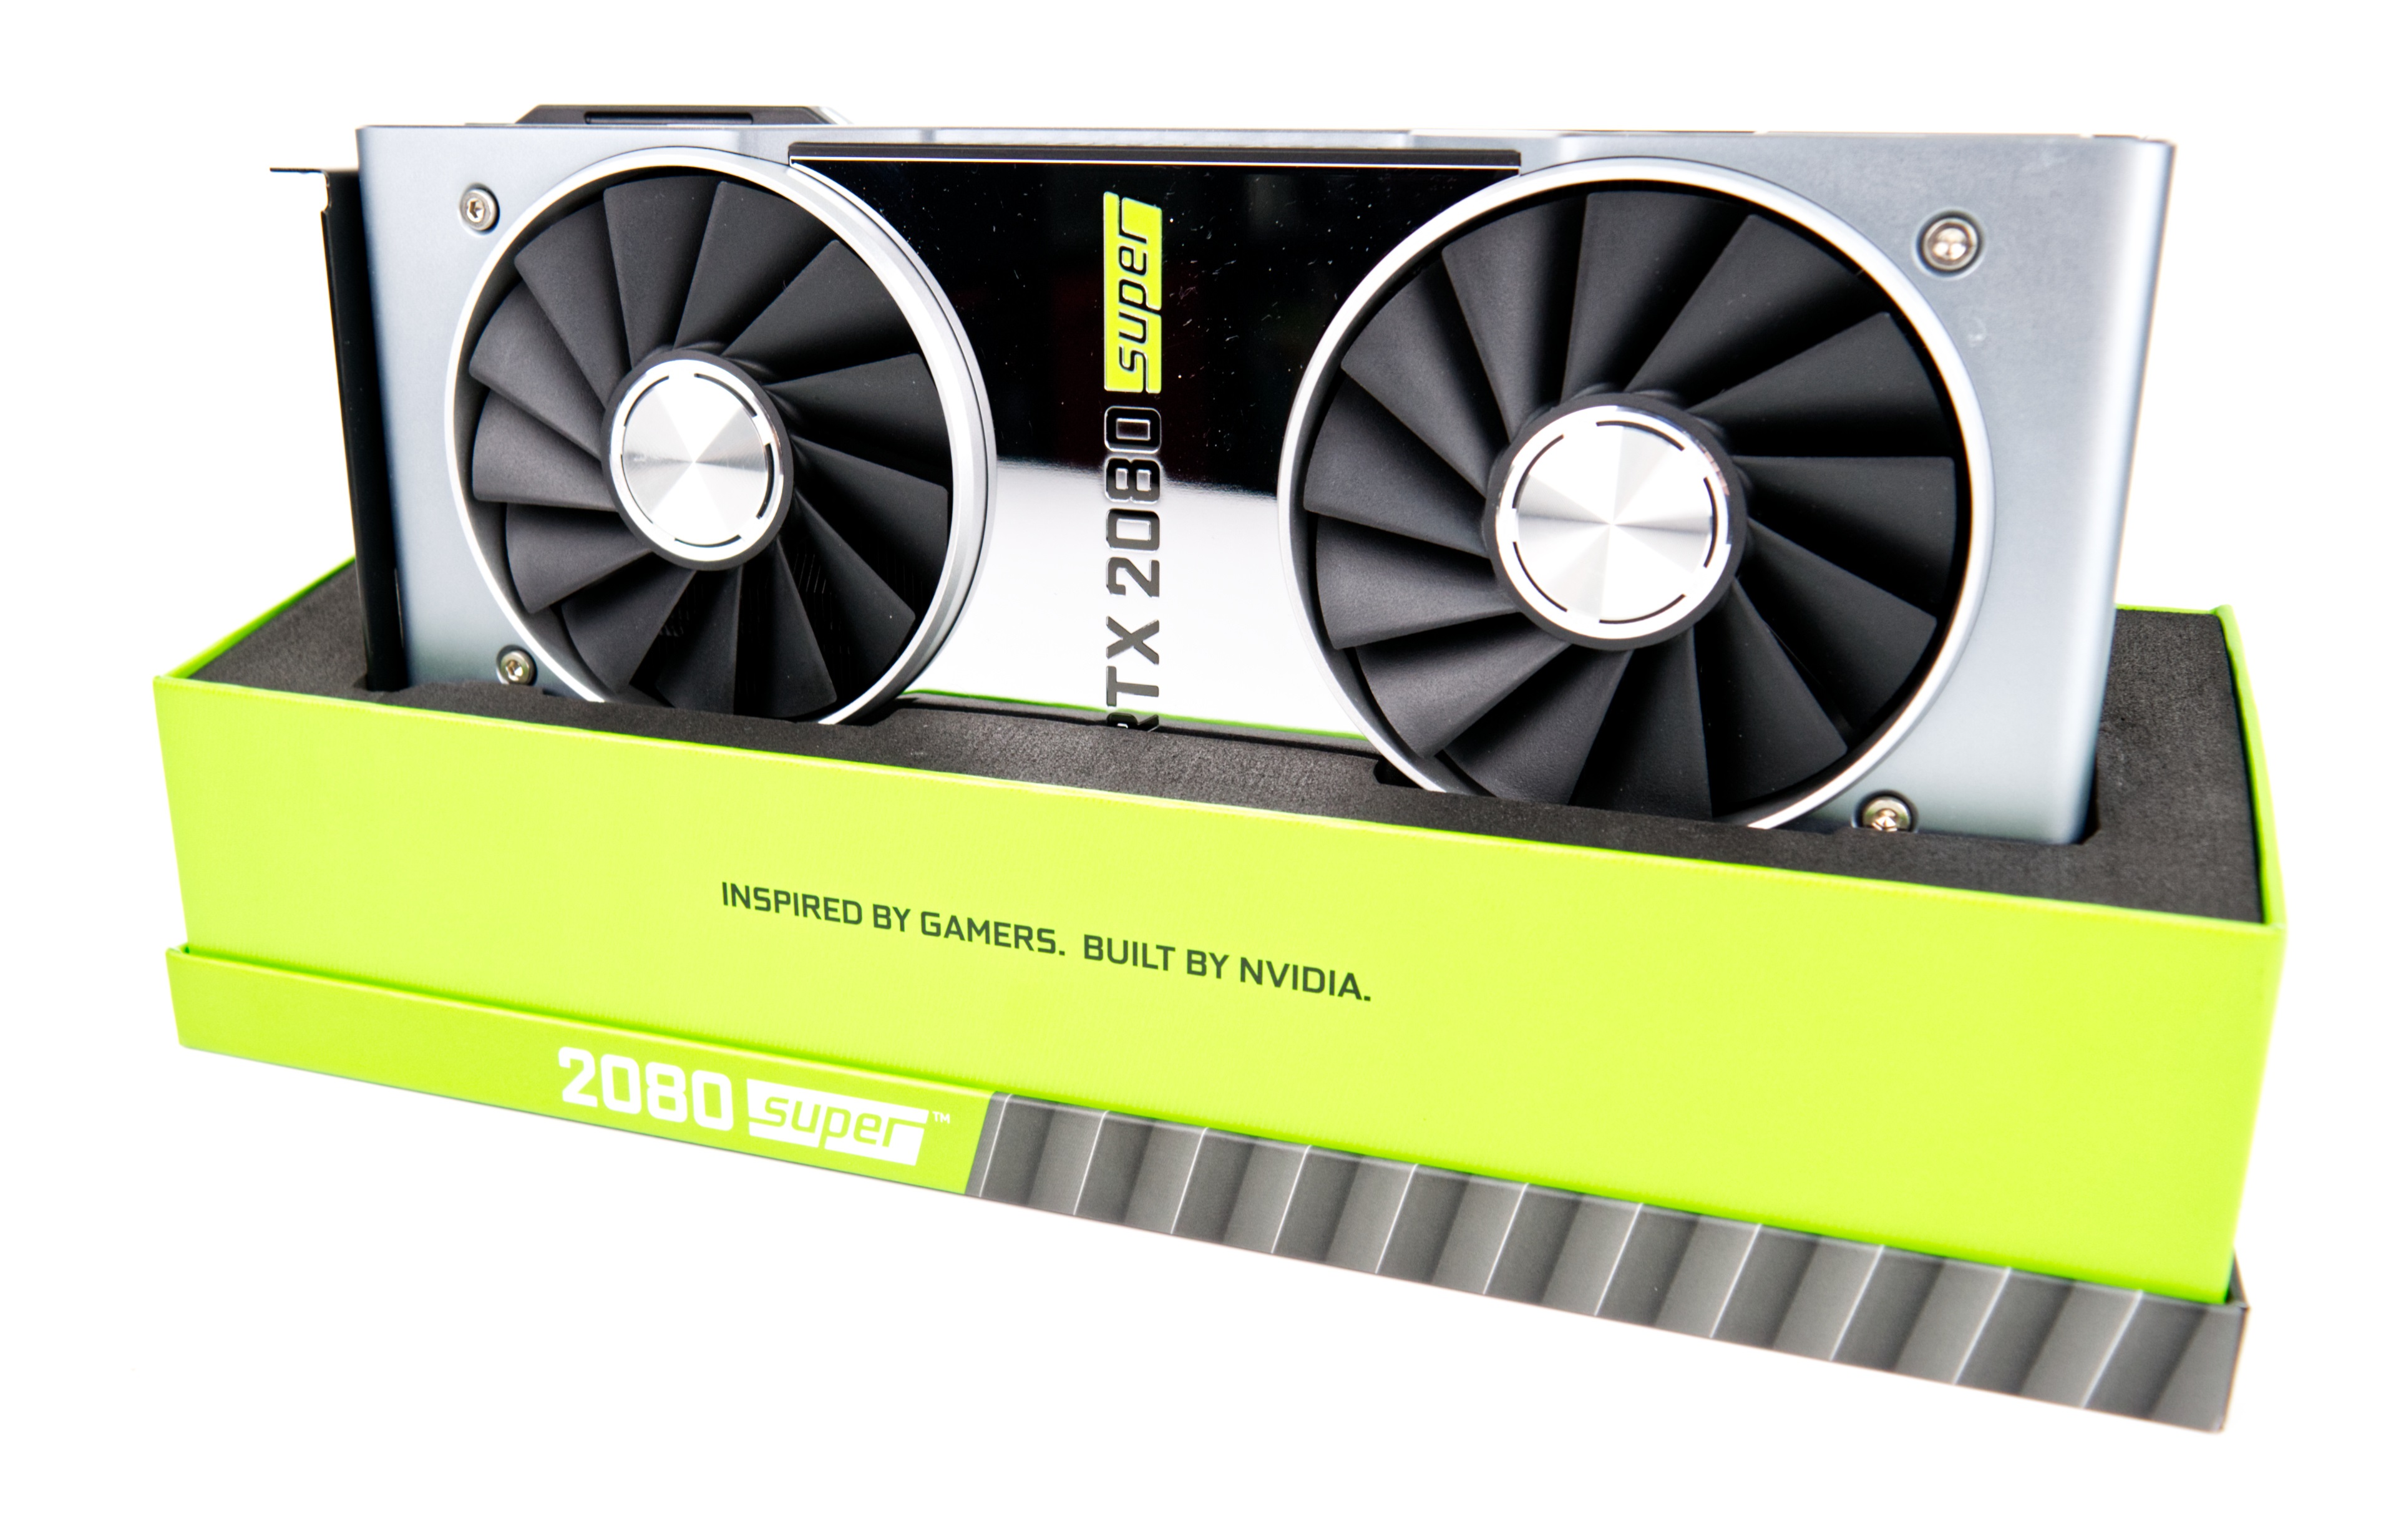 NVIDIA RTX 2080 SUPER Desktop GPU Review: A high-end Desktop GPU